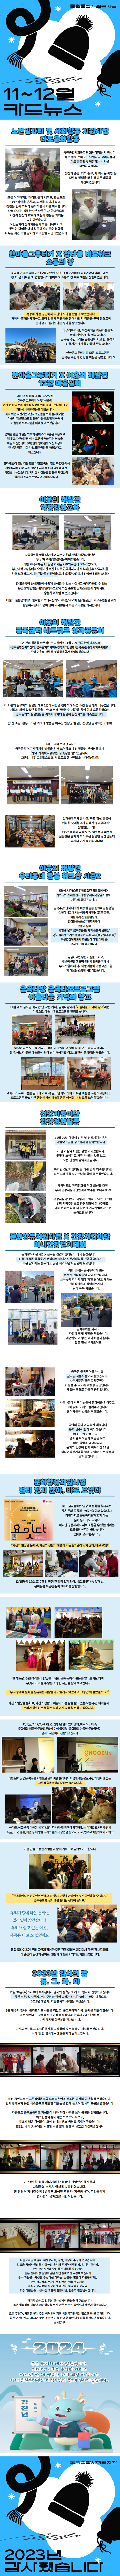 동원종합사회복지관 11월, 12월 카드뉴스